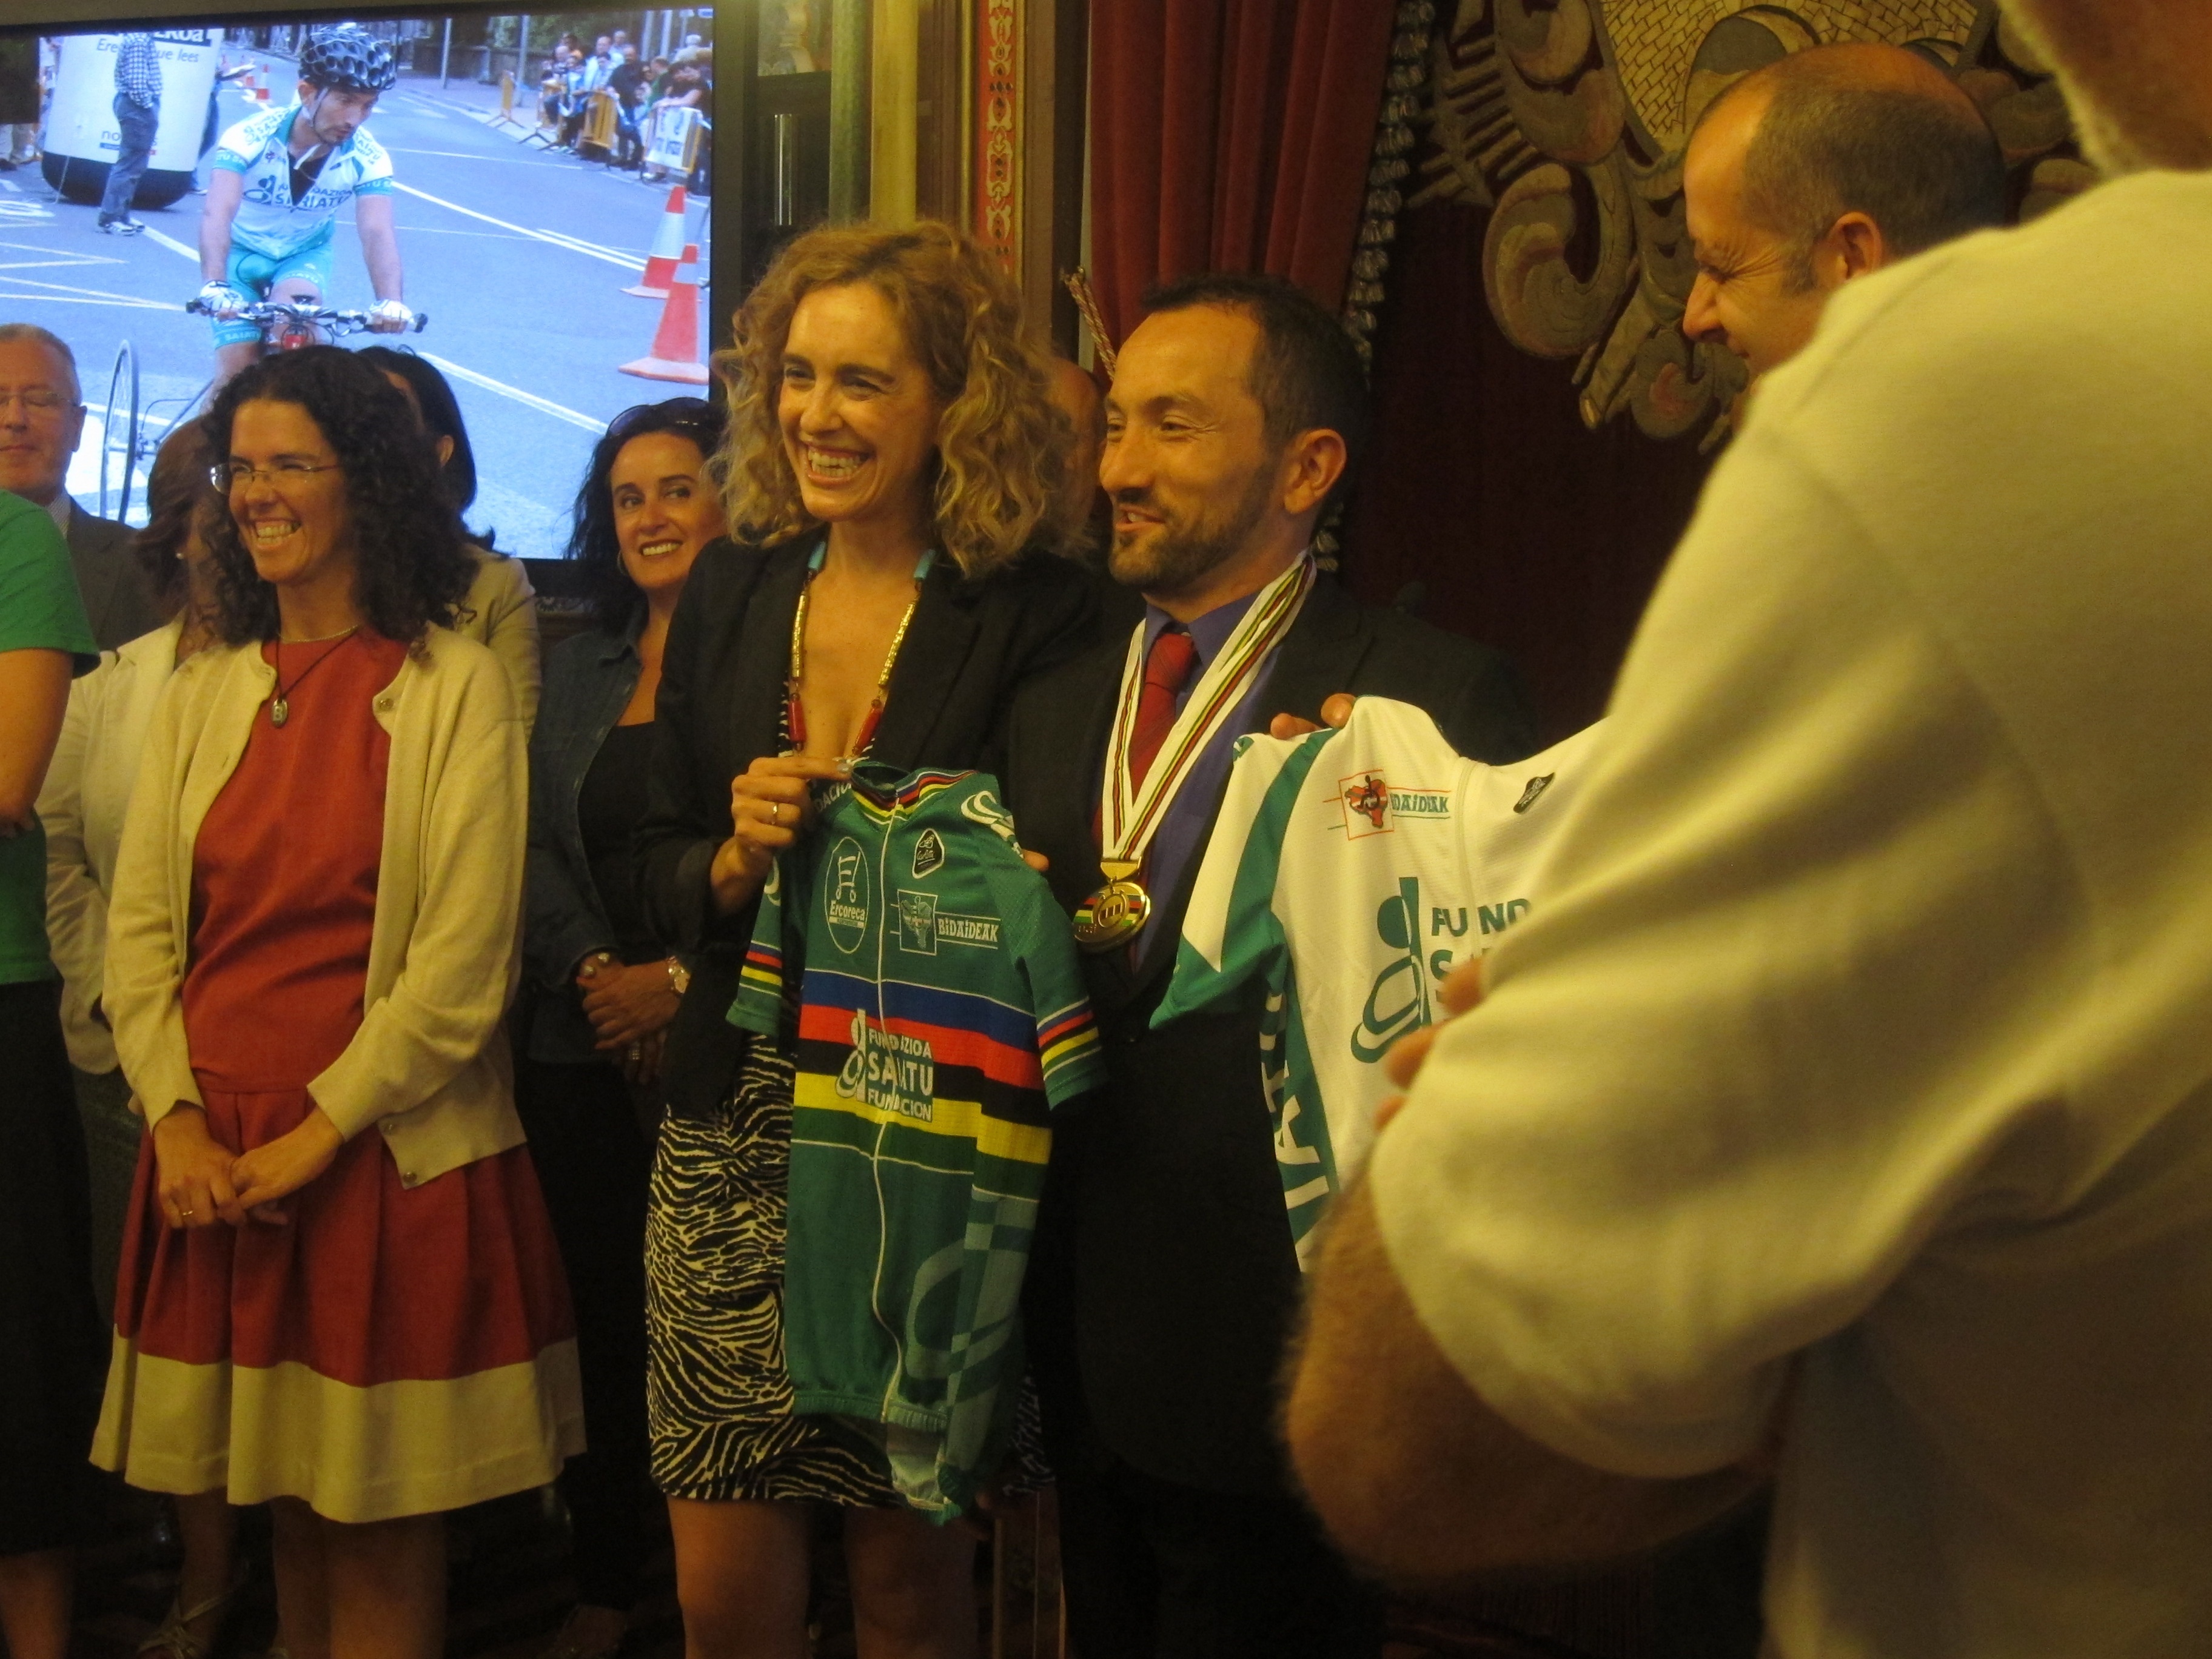 El bicampeón mundial de paraciclismo Aitor Oroza recibe el reconocimiento a sus victorias en el Ayuntamiento de Bilbao